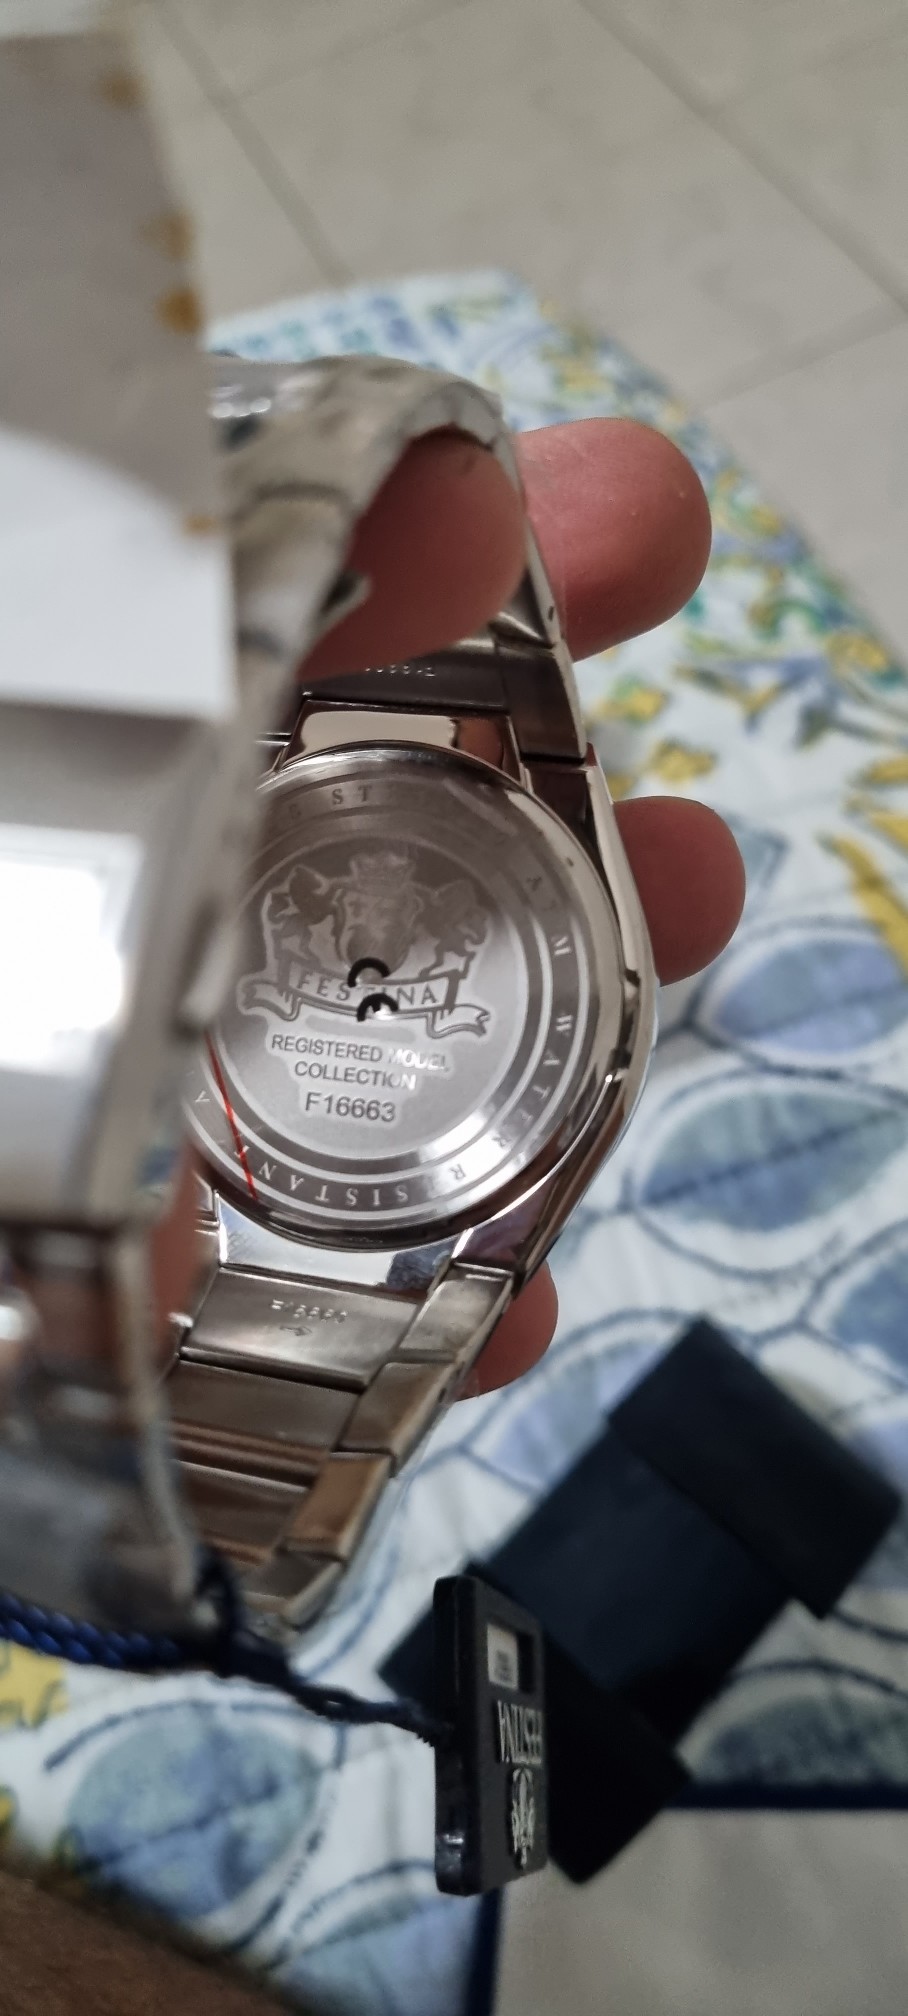 joyas, relojes y accesorios - Se vende Reloj Festina F16663 4